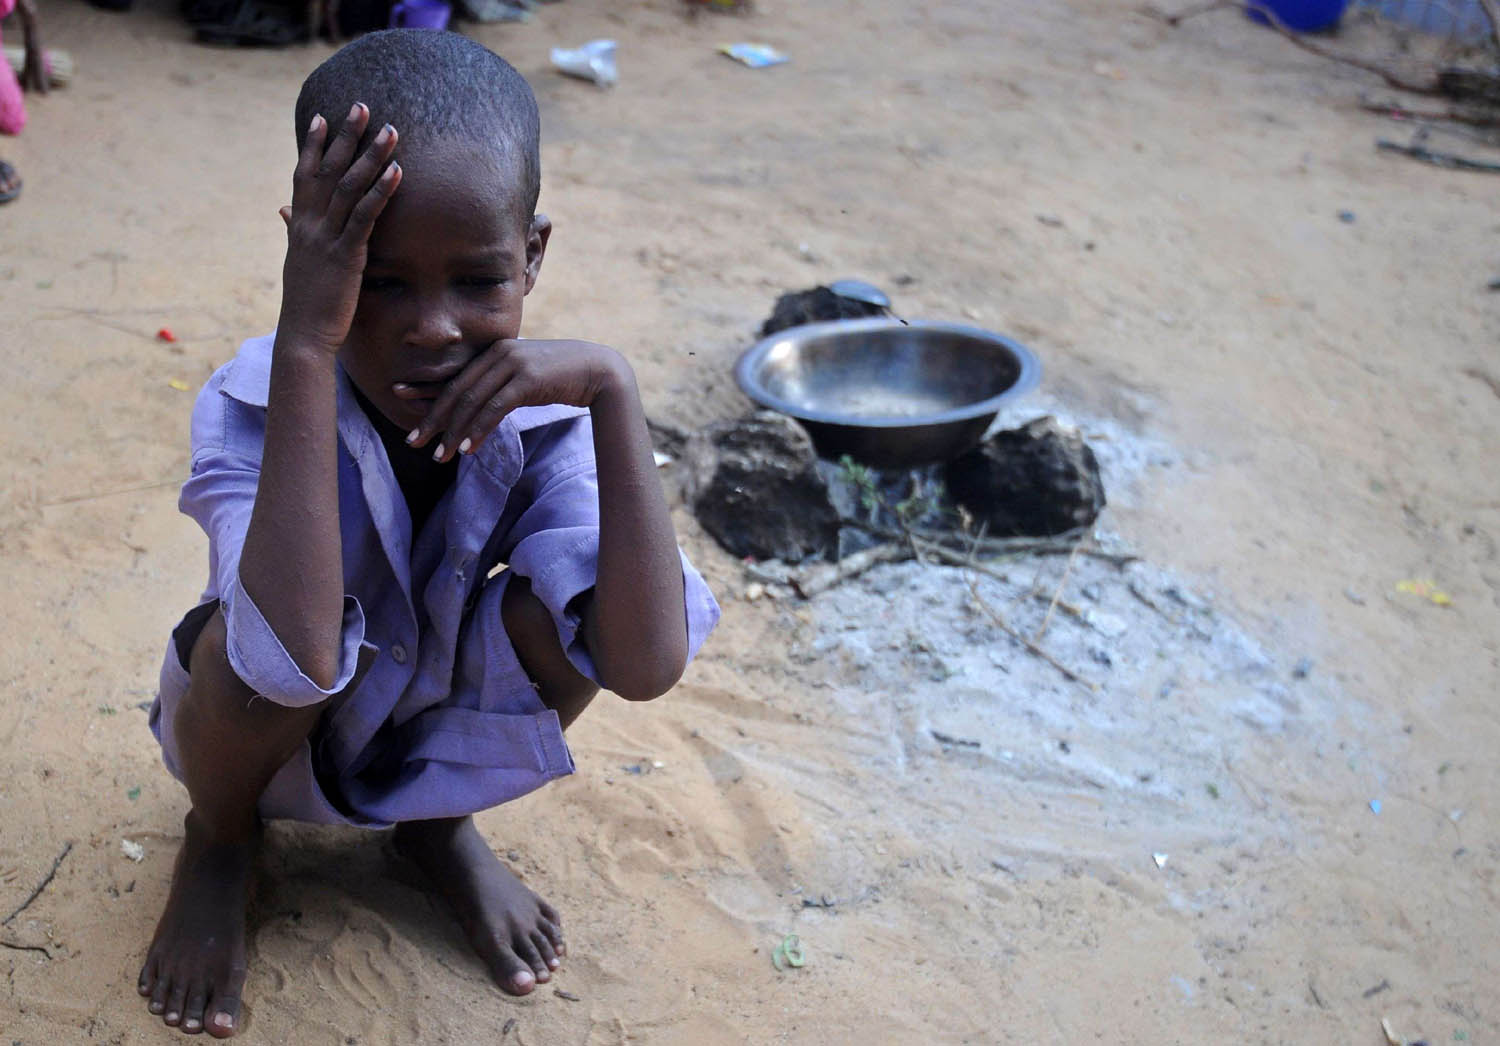 طفل صومالي في معسكر نازحين بسبب المجاعة